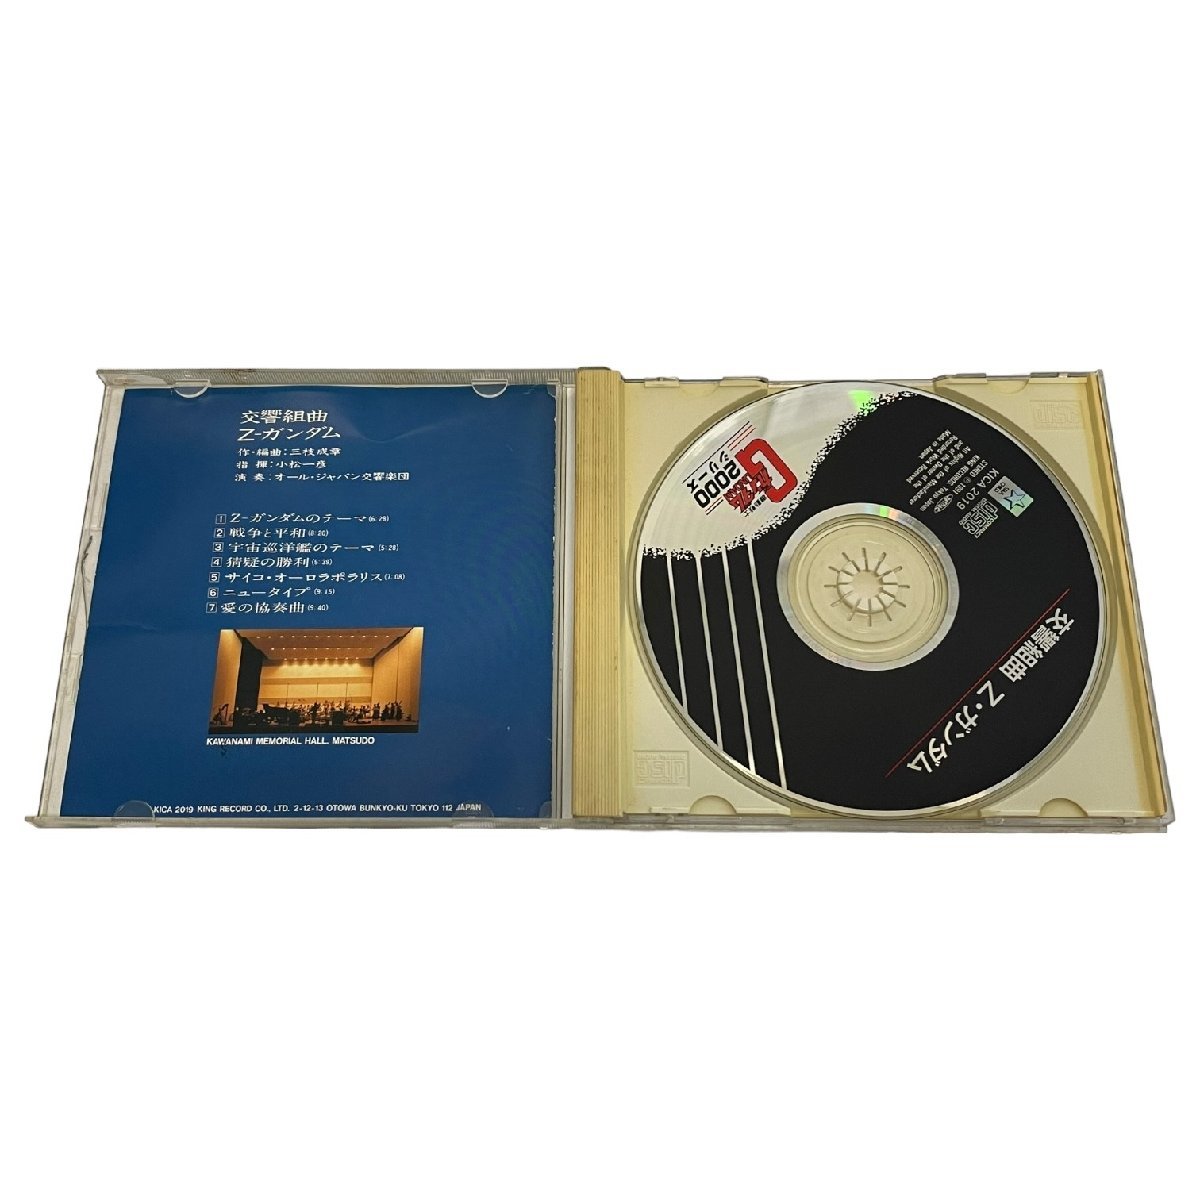 [ б/у товар * работоспособность не проверялась ] реверберация Kumikyoku Z Gundam музыкальное сопровождение игр CD кейс повреждение есть L57114RF